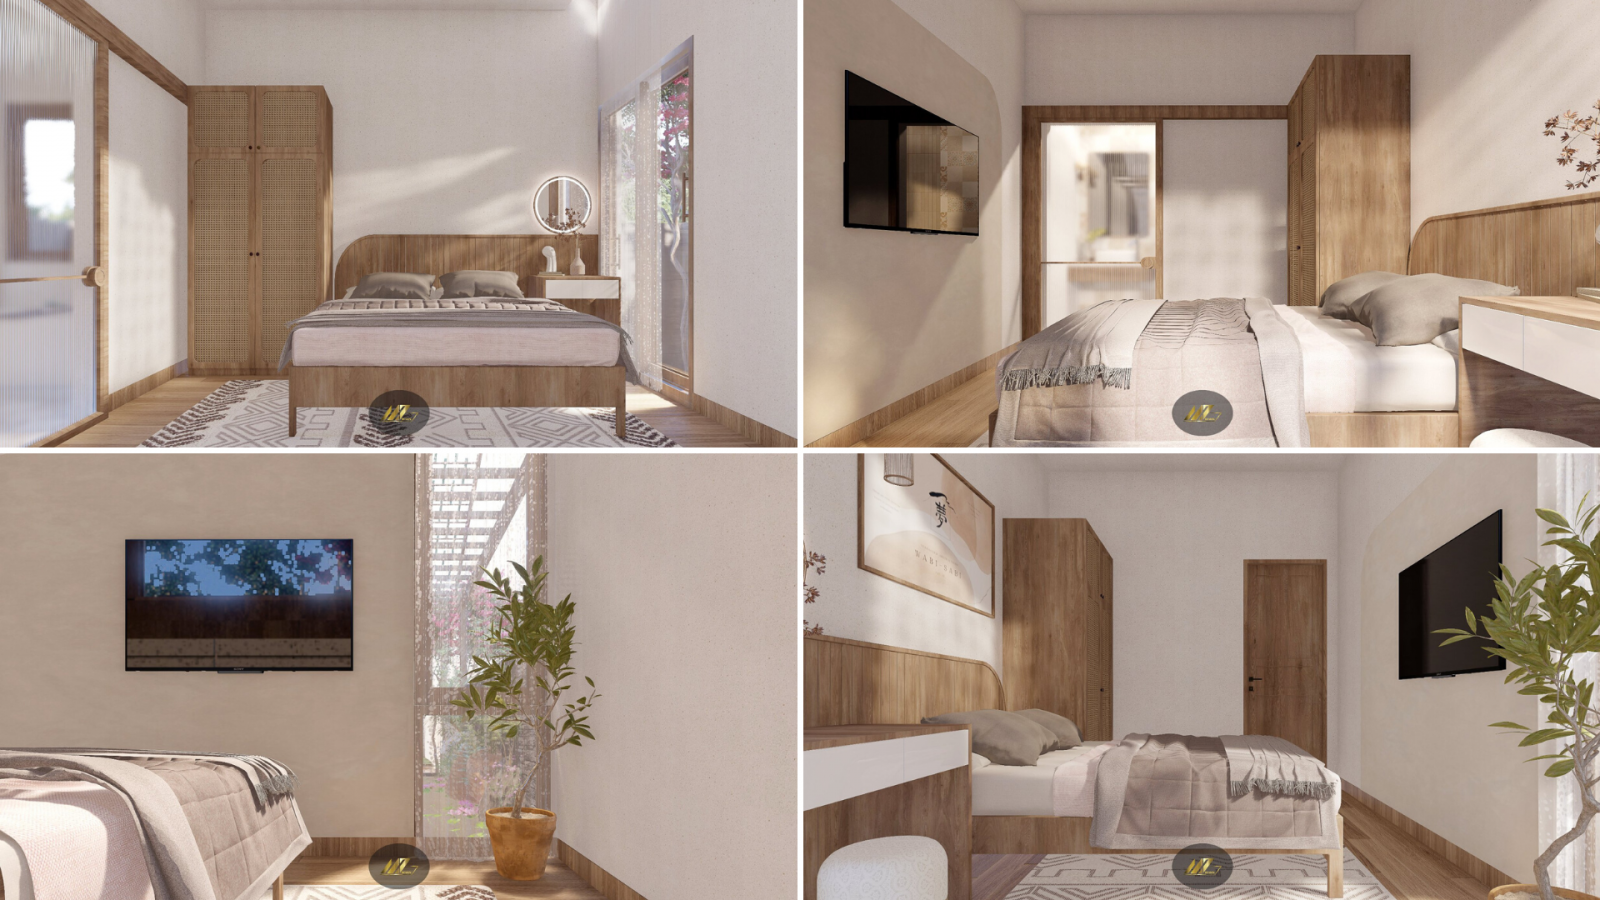 Các phòng ngủ được thiết kế dựa trên sự đơn giản là chìa khóa. Nội thất thiên về bố cục  ghép nối, với giường ngủ là tâm điểm. Với tường sơn hiệu ứng Conpa, tạo nên một không gian hoài cổ một cách tự nhiên. 